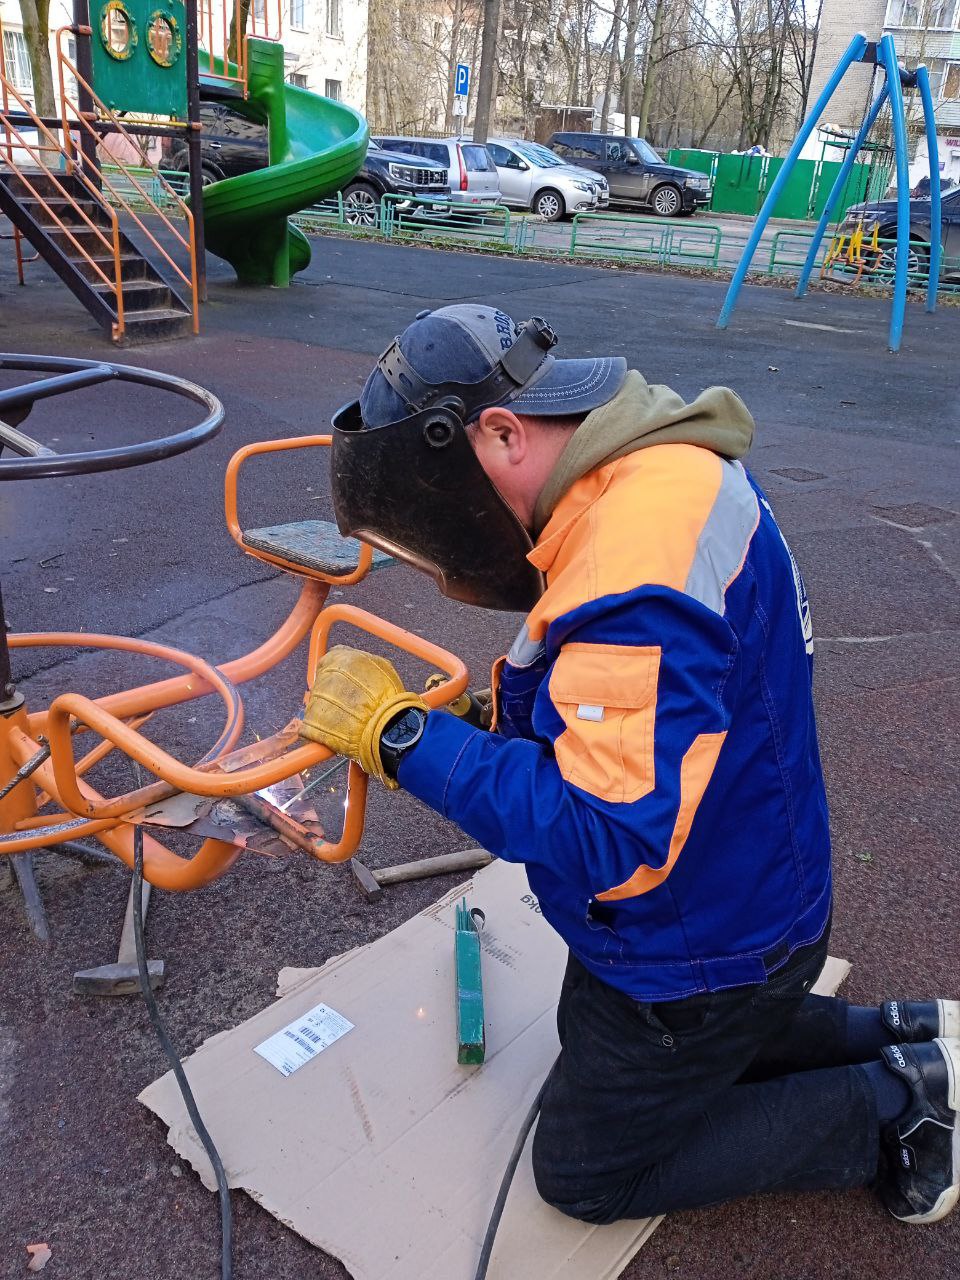 Наклейки на детских площадках Королёва вновь проинформируют детей и взрослых о дате устранения дефектов на игровых элементах